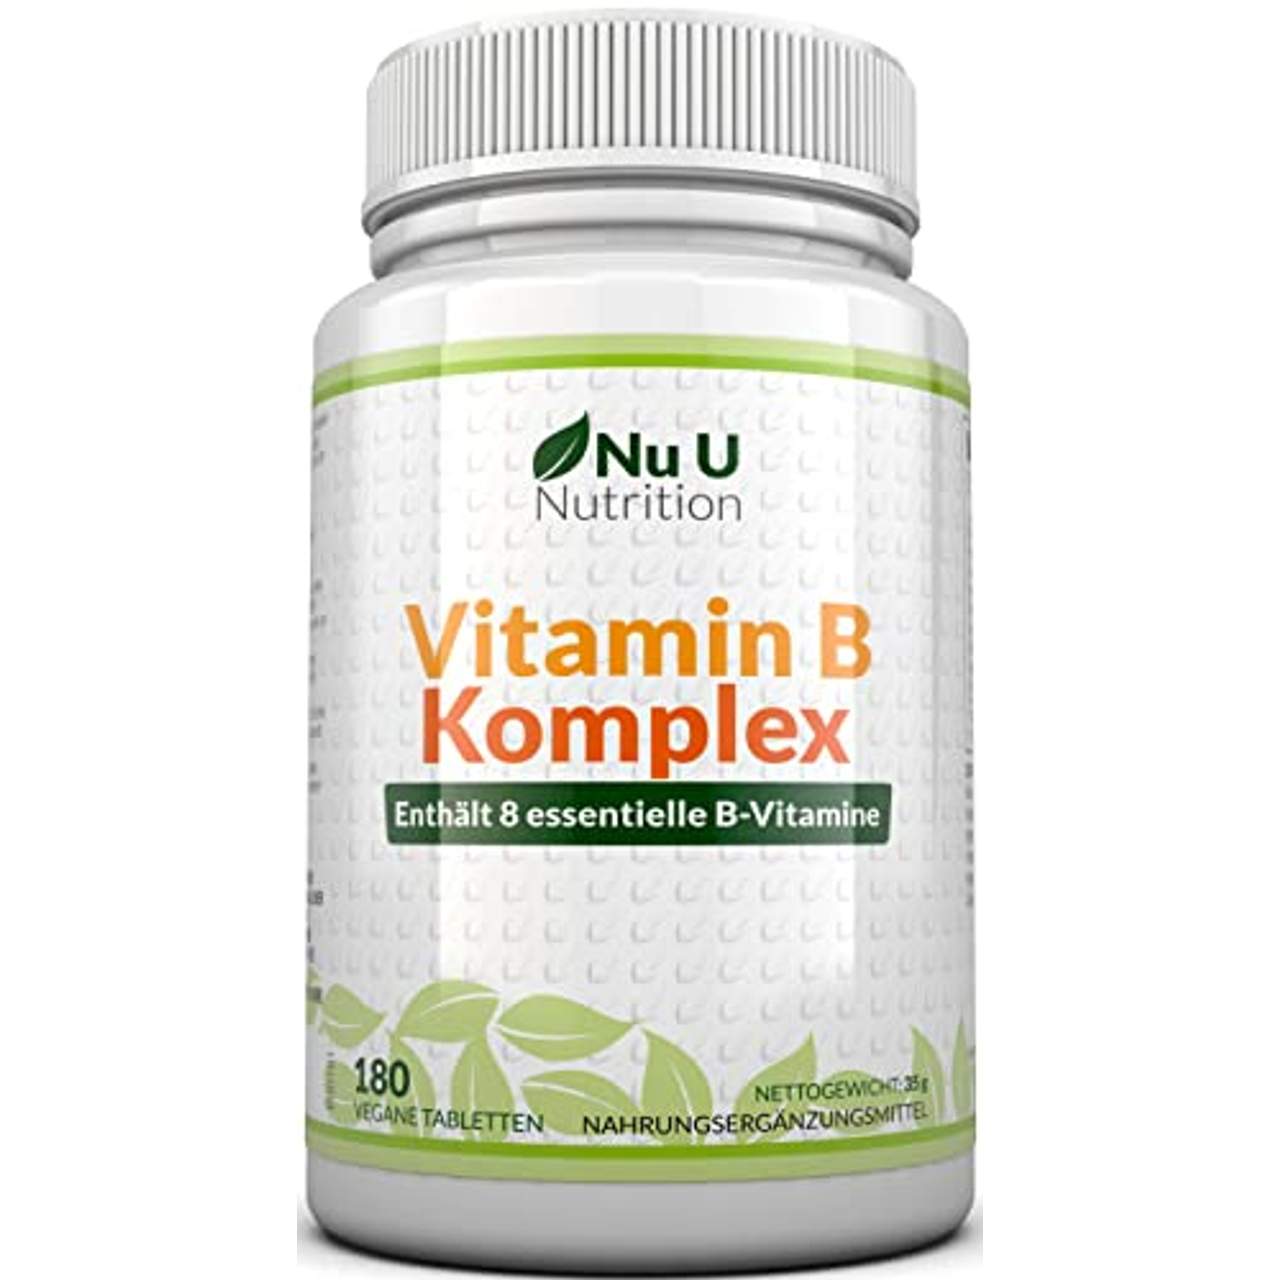 Nu U Nutrition Vitamin B-Komplex